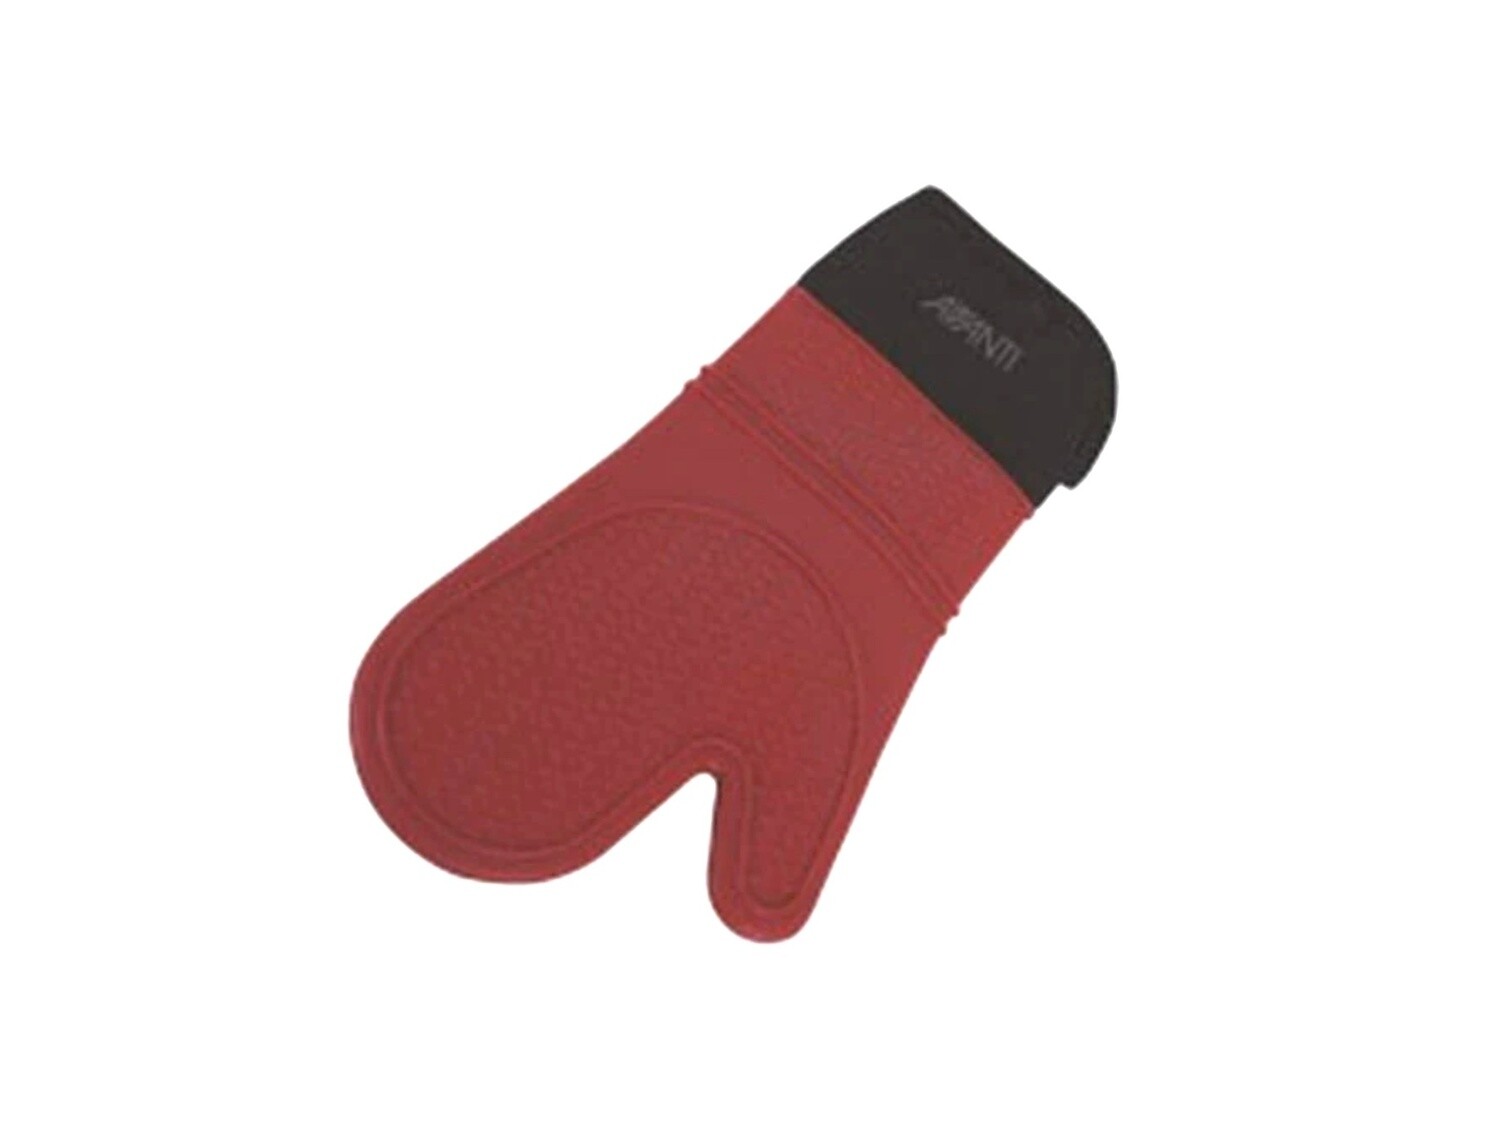 Avanti - Oven Glove Silicone Single - Red